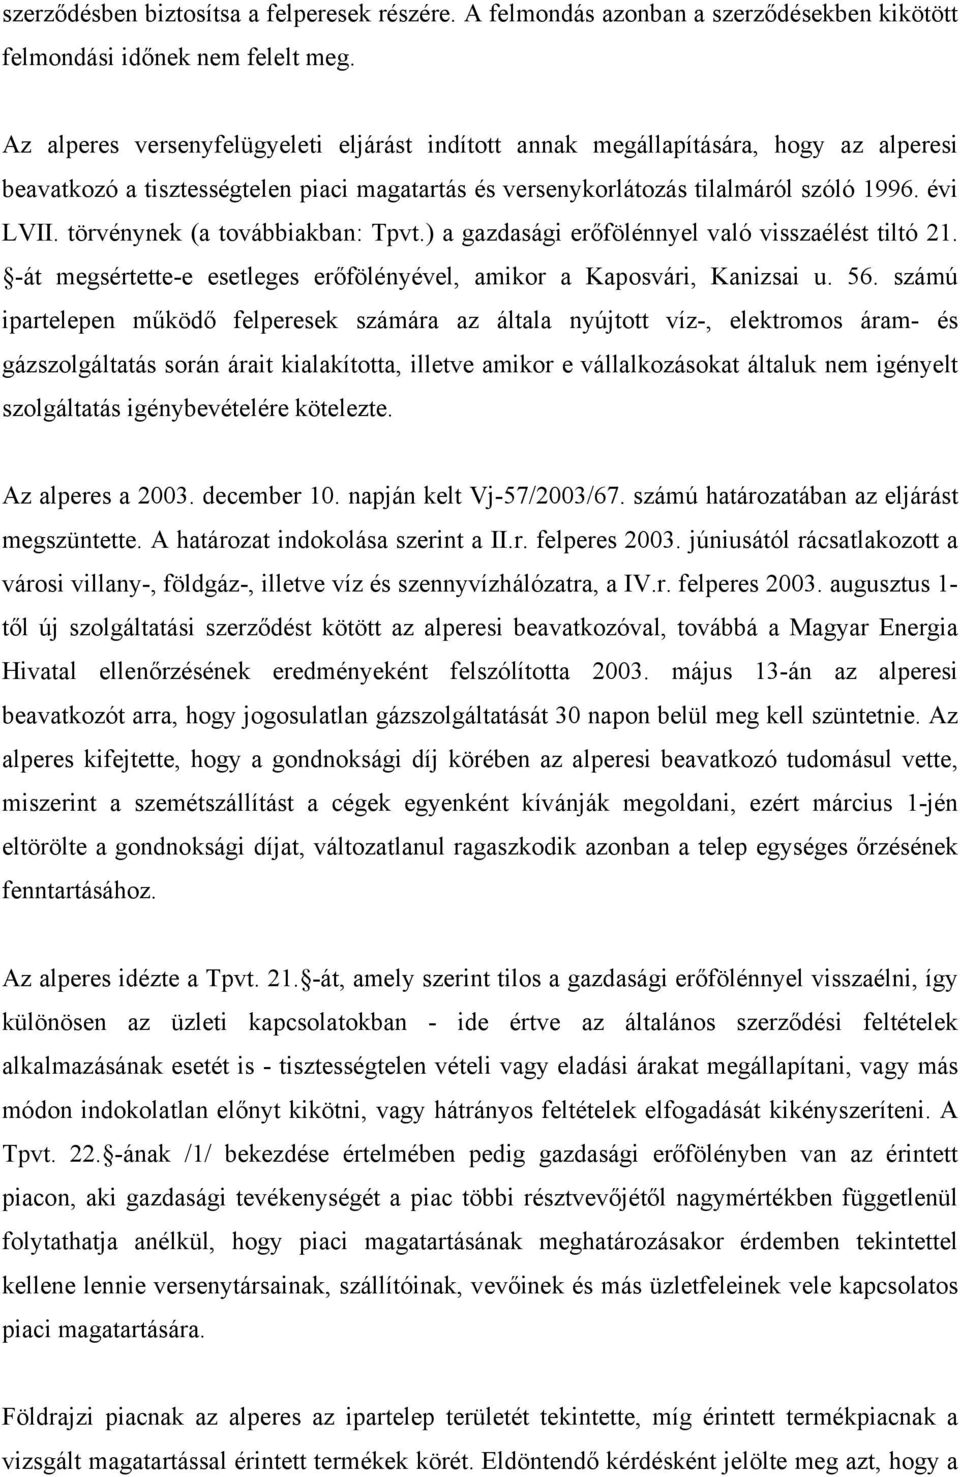 törvénynek (a továbbiakban: Tpvt.) a gazdasági erőfölénnyel való visszaélést tiltó 21. -át megsértette-e esetleges erőfölényével, amikor a Kaposvári, Kanizsai u. 56.